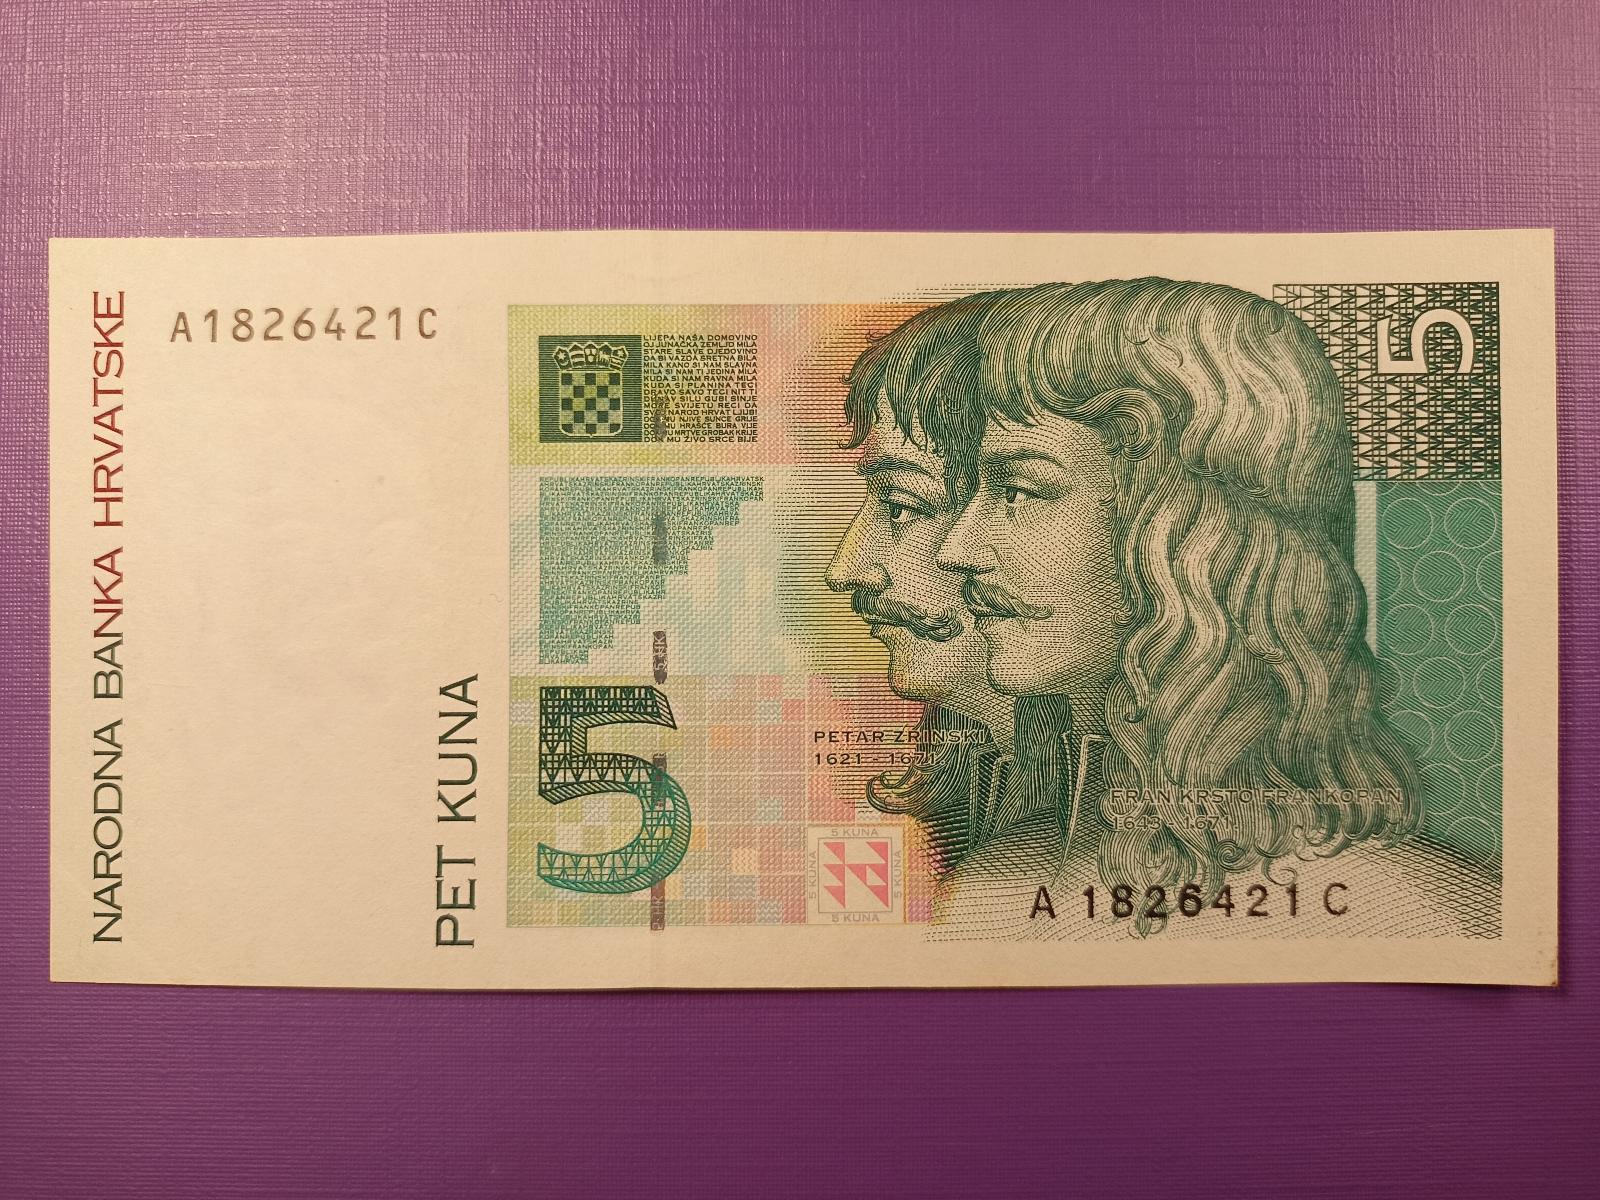 Chorvátsko 5 kún 1993 krásna - Bankovky